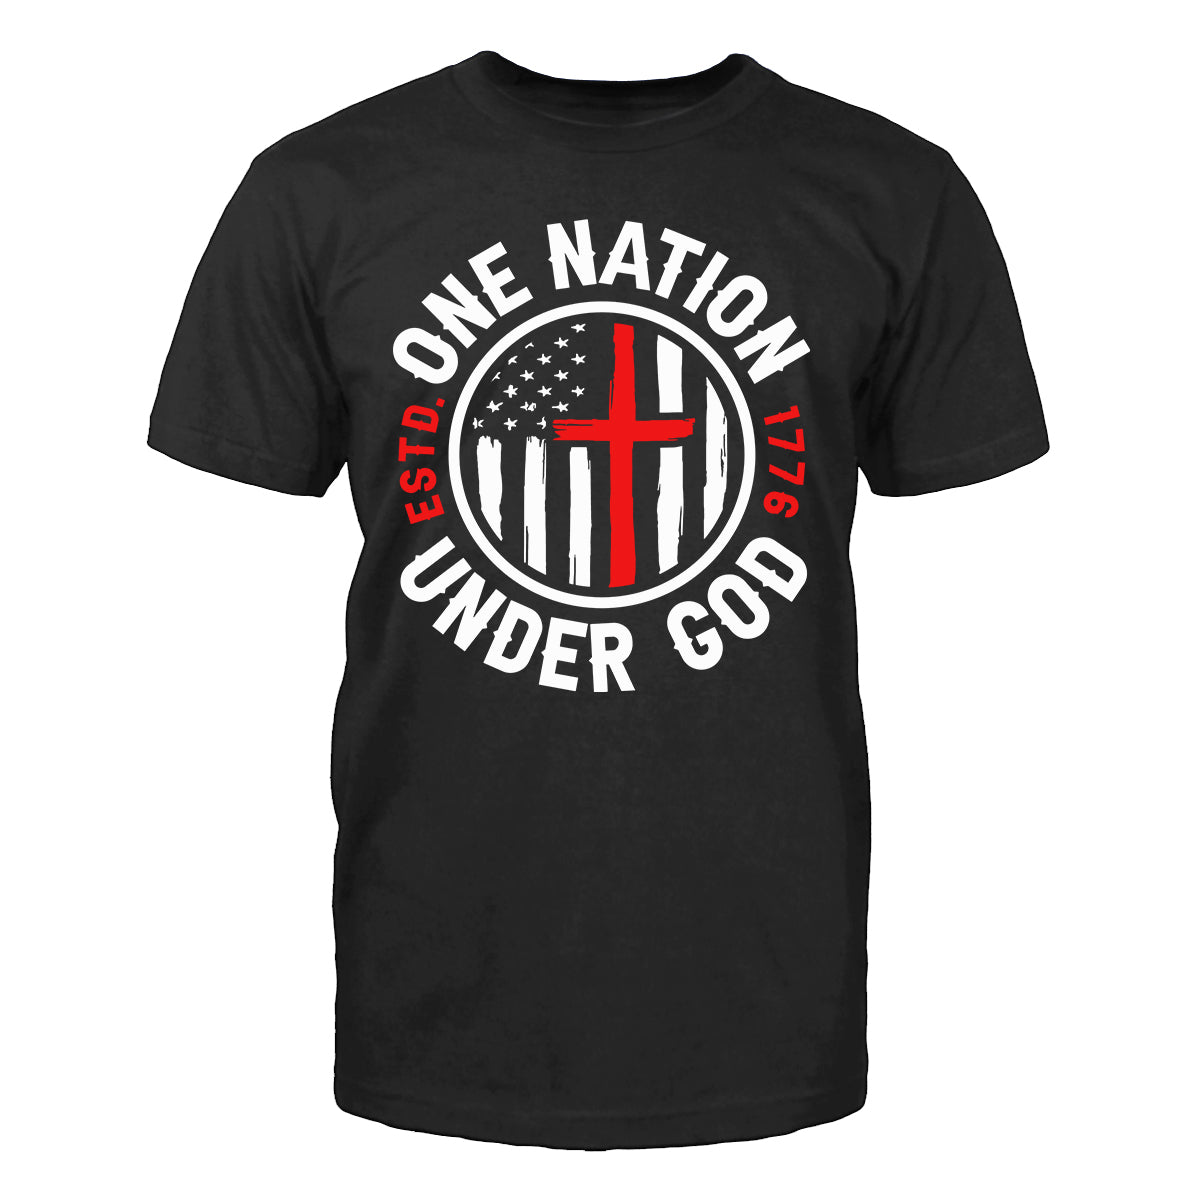 One Nation Under God 1776 Men's T-Shirt